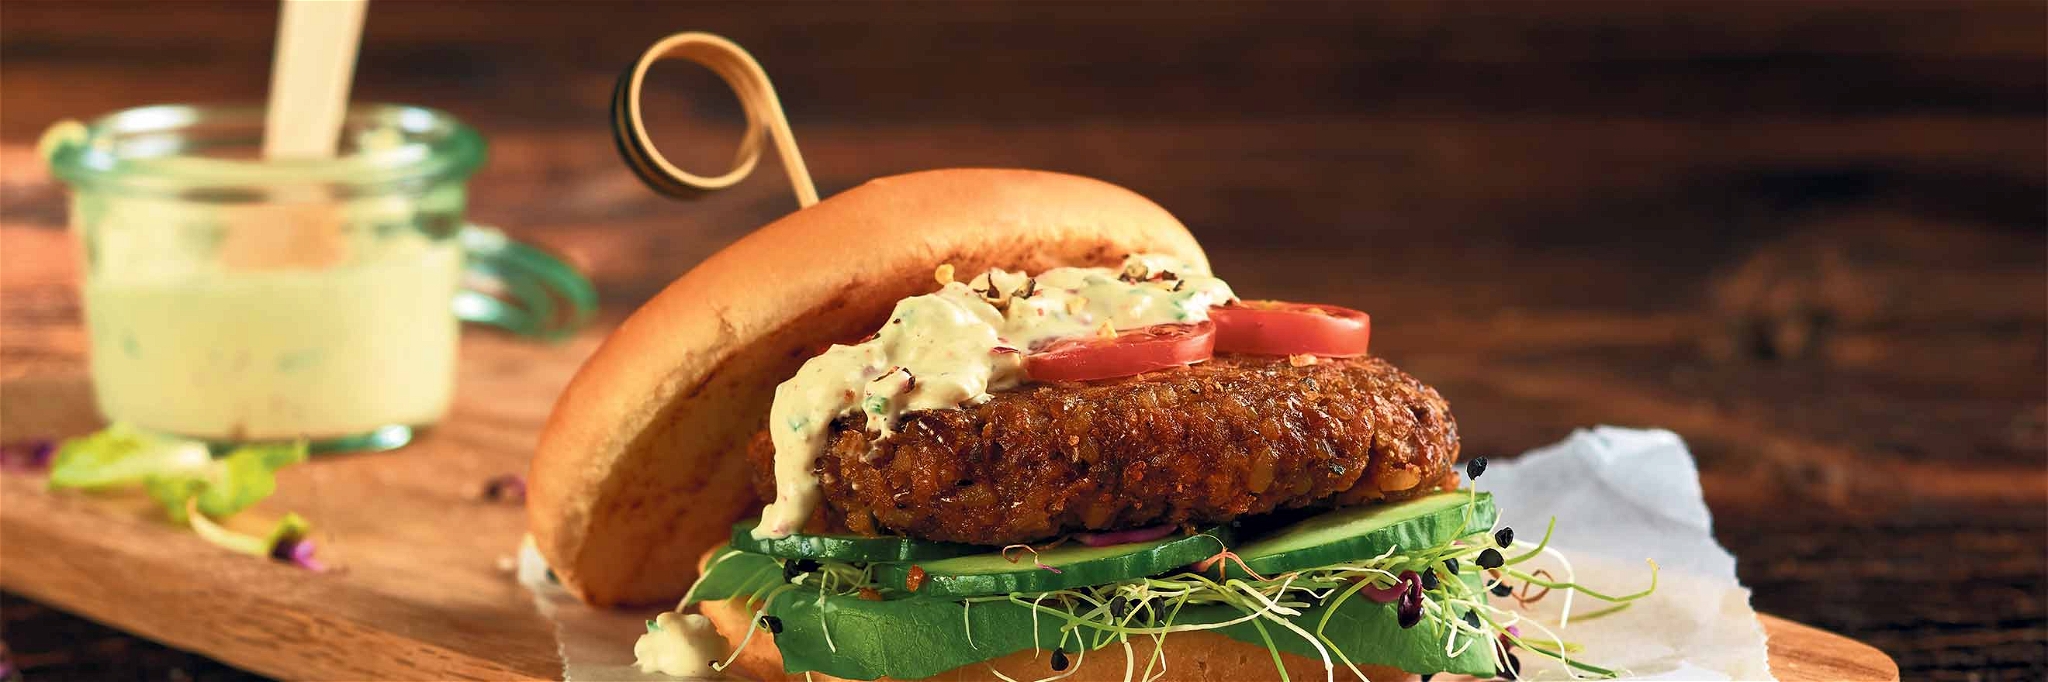 Der Burger zählt zu den neuen Produkten aus Insekten, die ab dem Frühling bei Coop erhätlich sind.